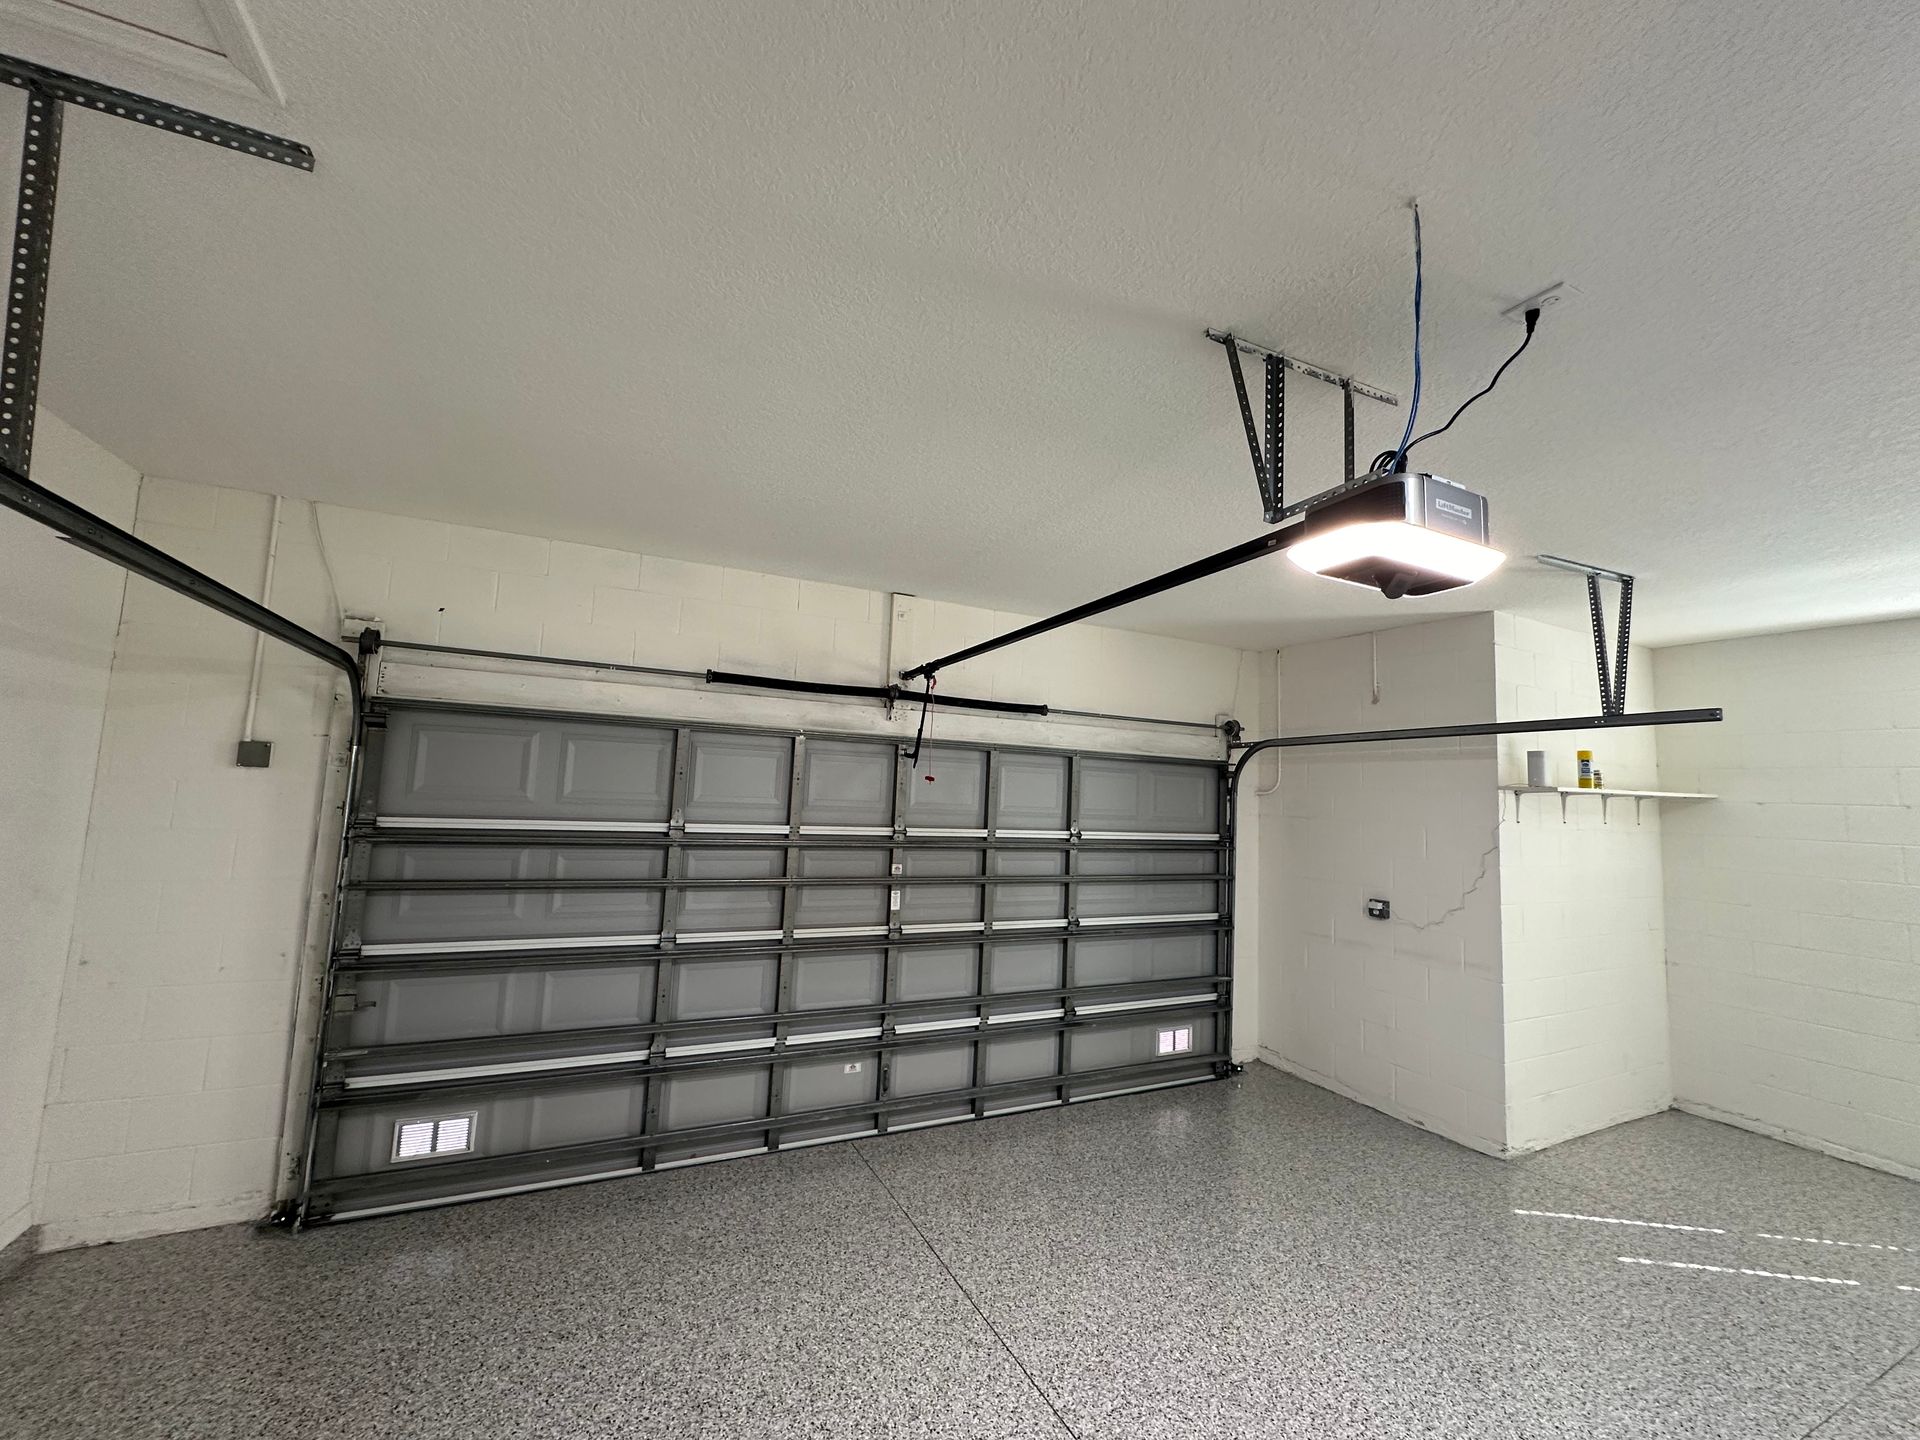 Finding the right garage door opener In Brevard, FL